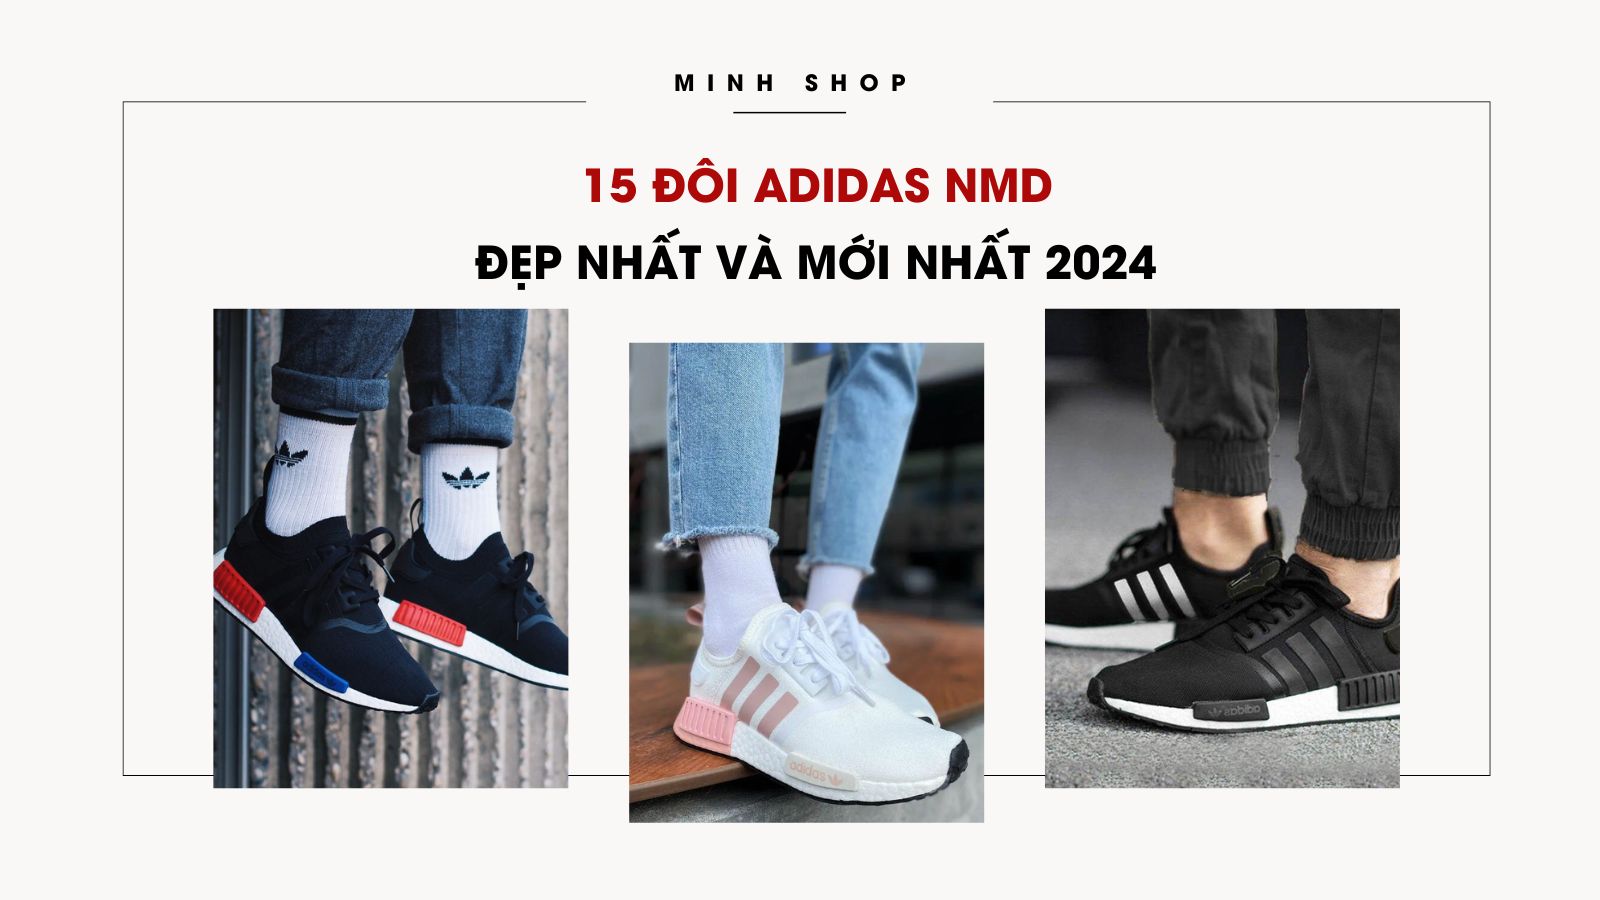 /bai-viet/15-doi-adidas-nmd-dep-nhat-va-moi-nhat-2024/522